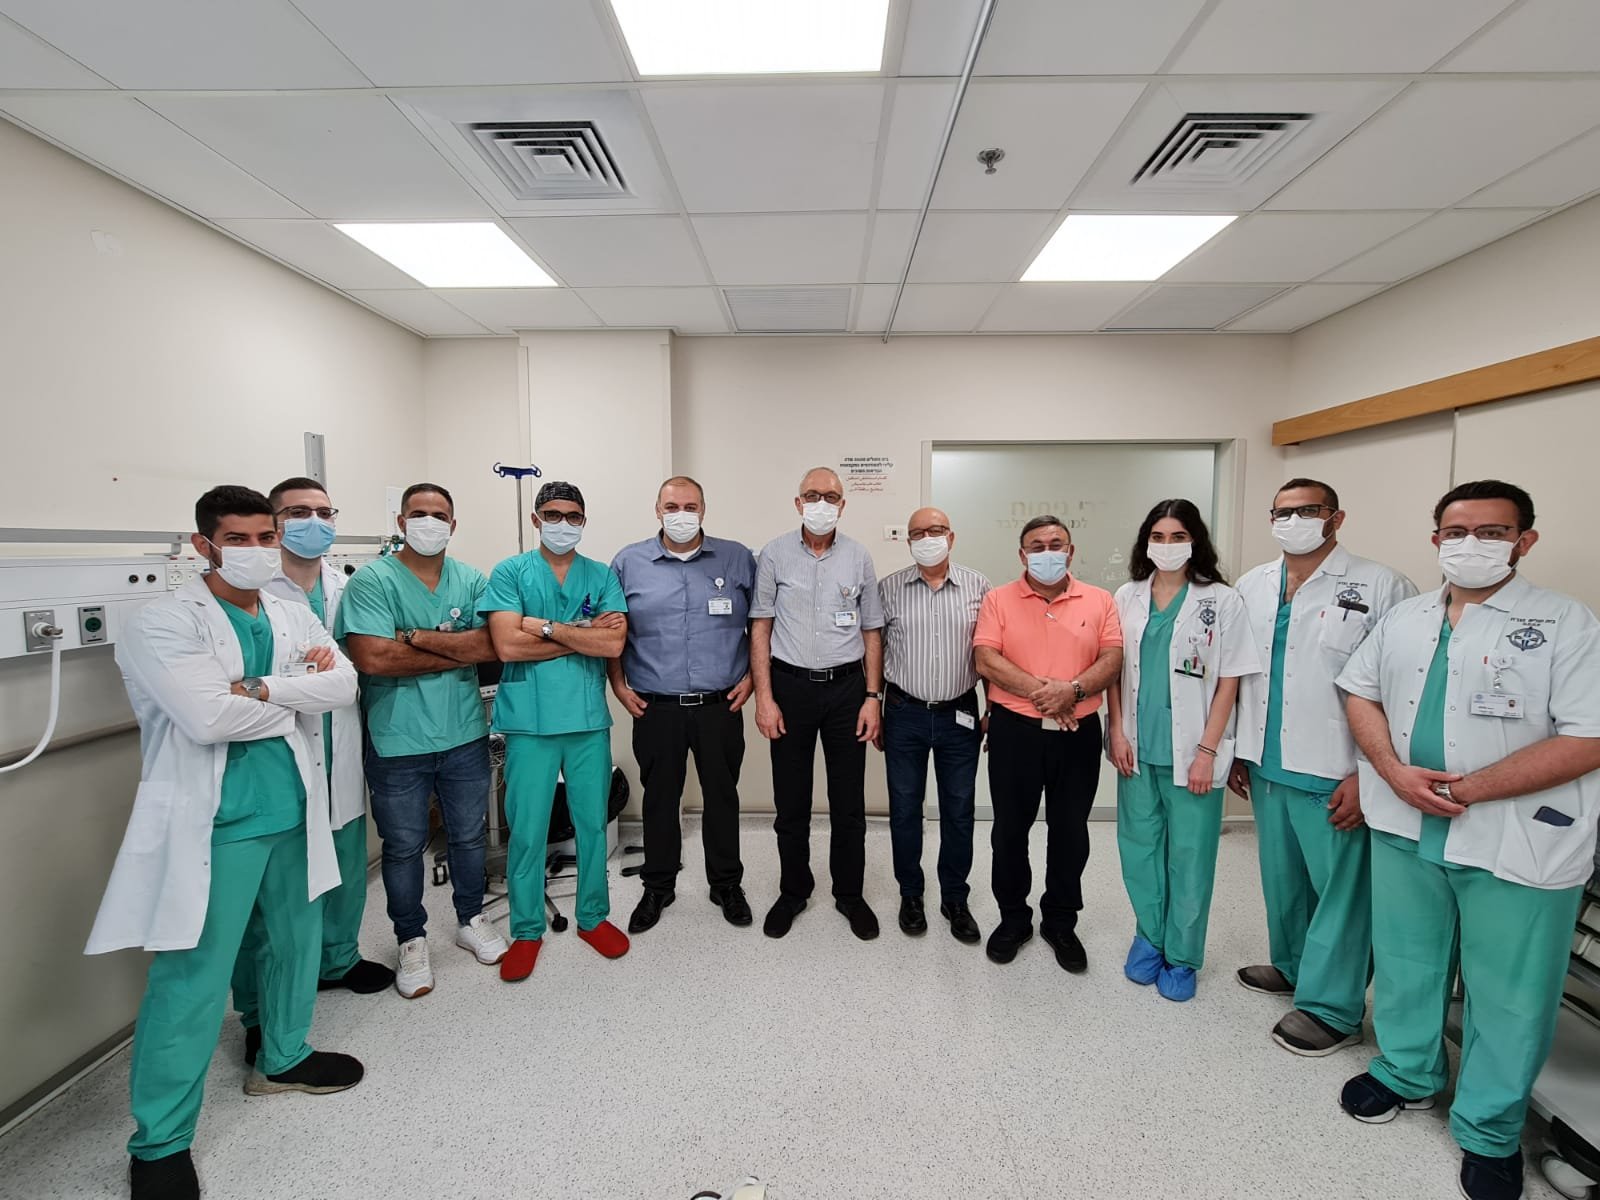 مستشفى الناصرة الانجليزي يستقطب خيرة أطباء المجتمع العربي د. وسام حسيب عبود يبدأ عمله في المستشفى كمدير لقسم الجراحة-1